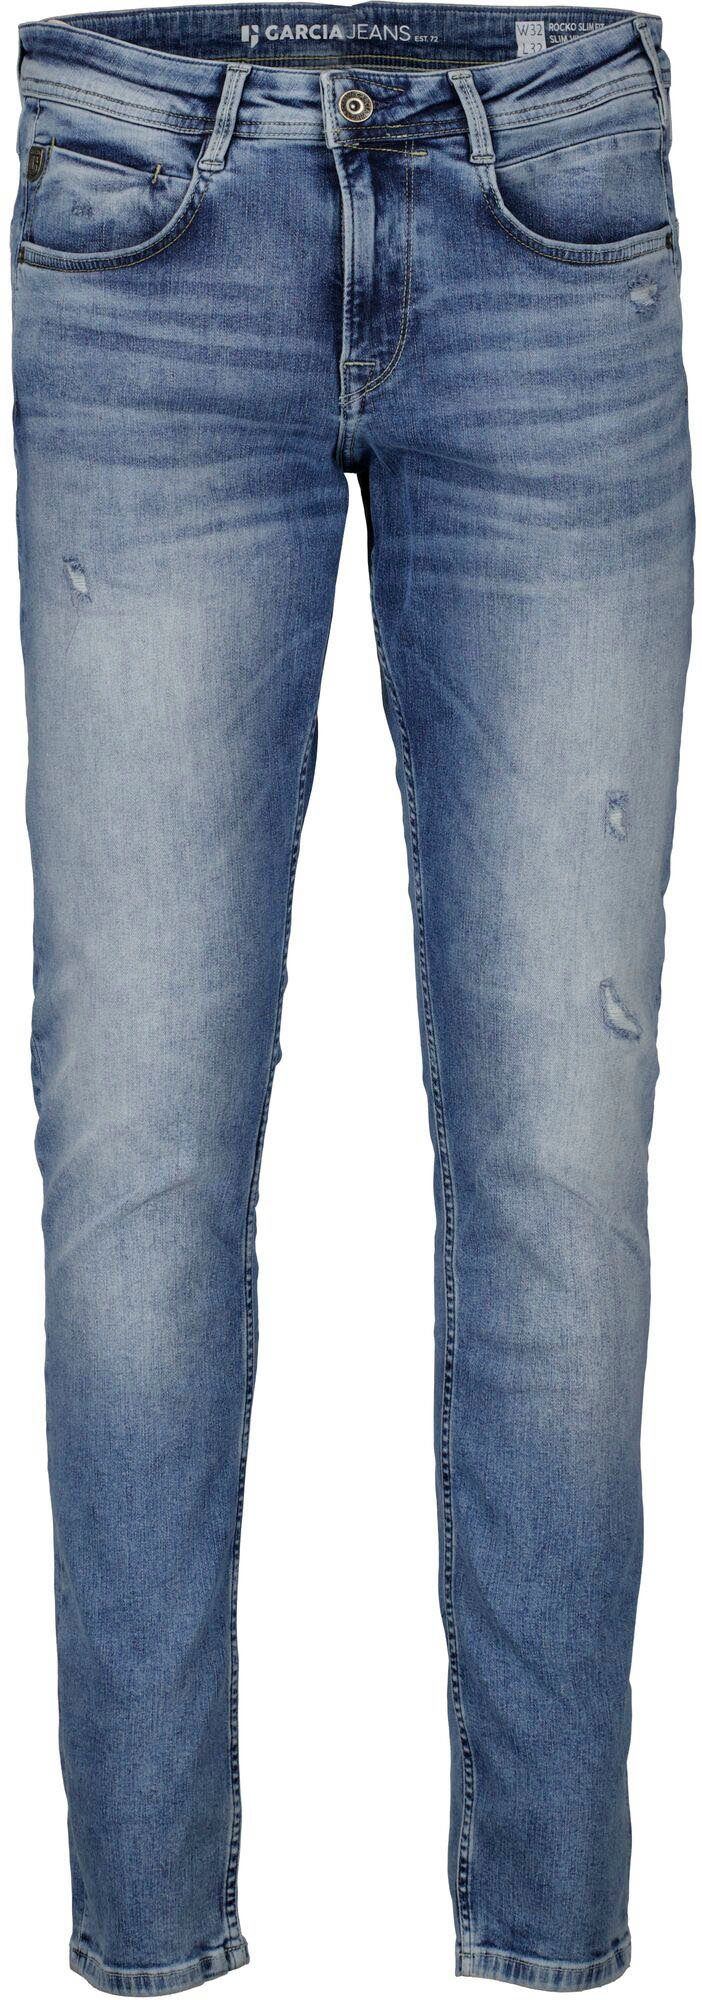 Garcia 5-Pocket-Jeans Rocko Waschungen in verschiedenen vintage used